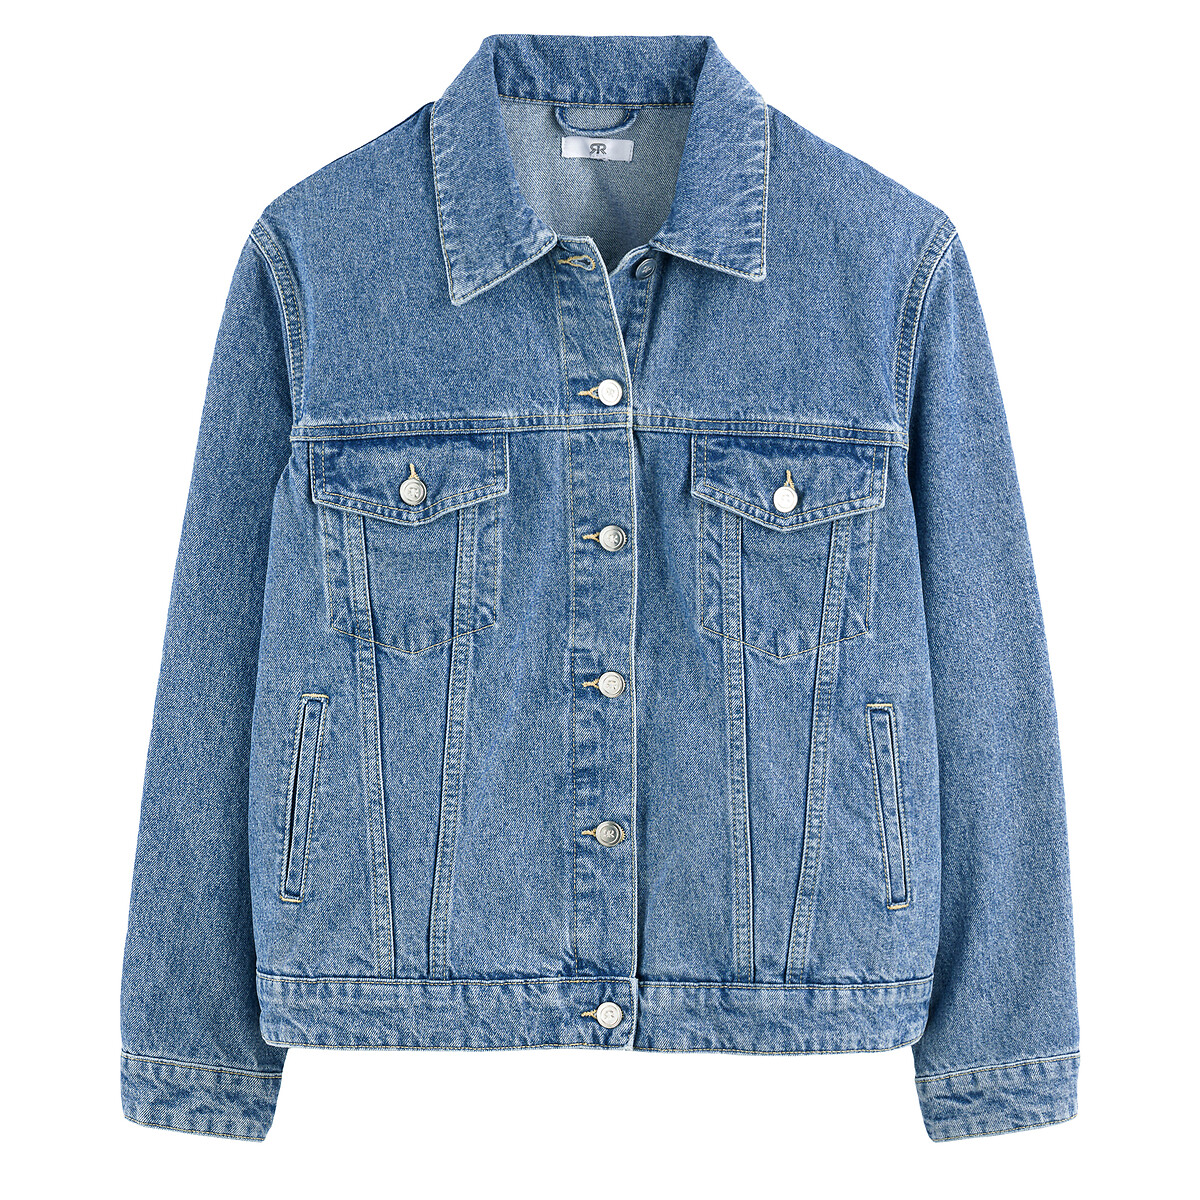 Куртка Из джинсовой ткани широкого покроя 48 (FR) - 54 (RUS) синий LaRedoute, размер 48 (FR) - 54 (RUS) Куртка Из джинсовой ткани широкого покроя 48 (FR) - 54 (RUS) синий - фото 5